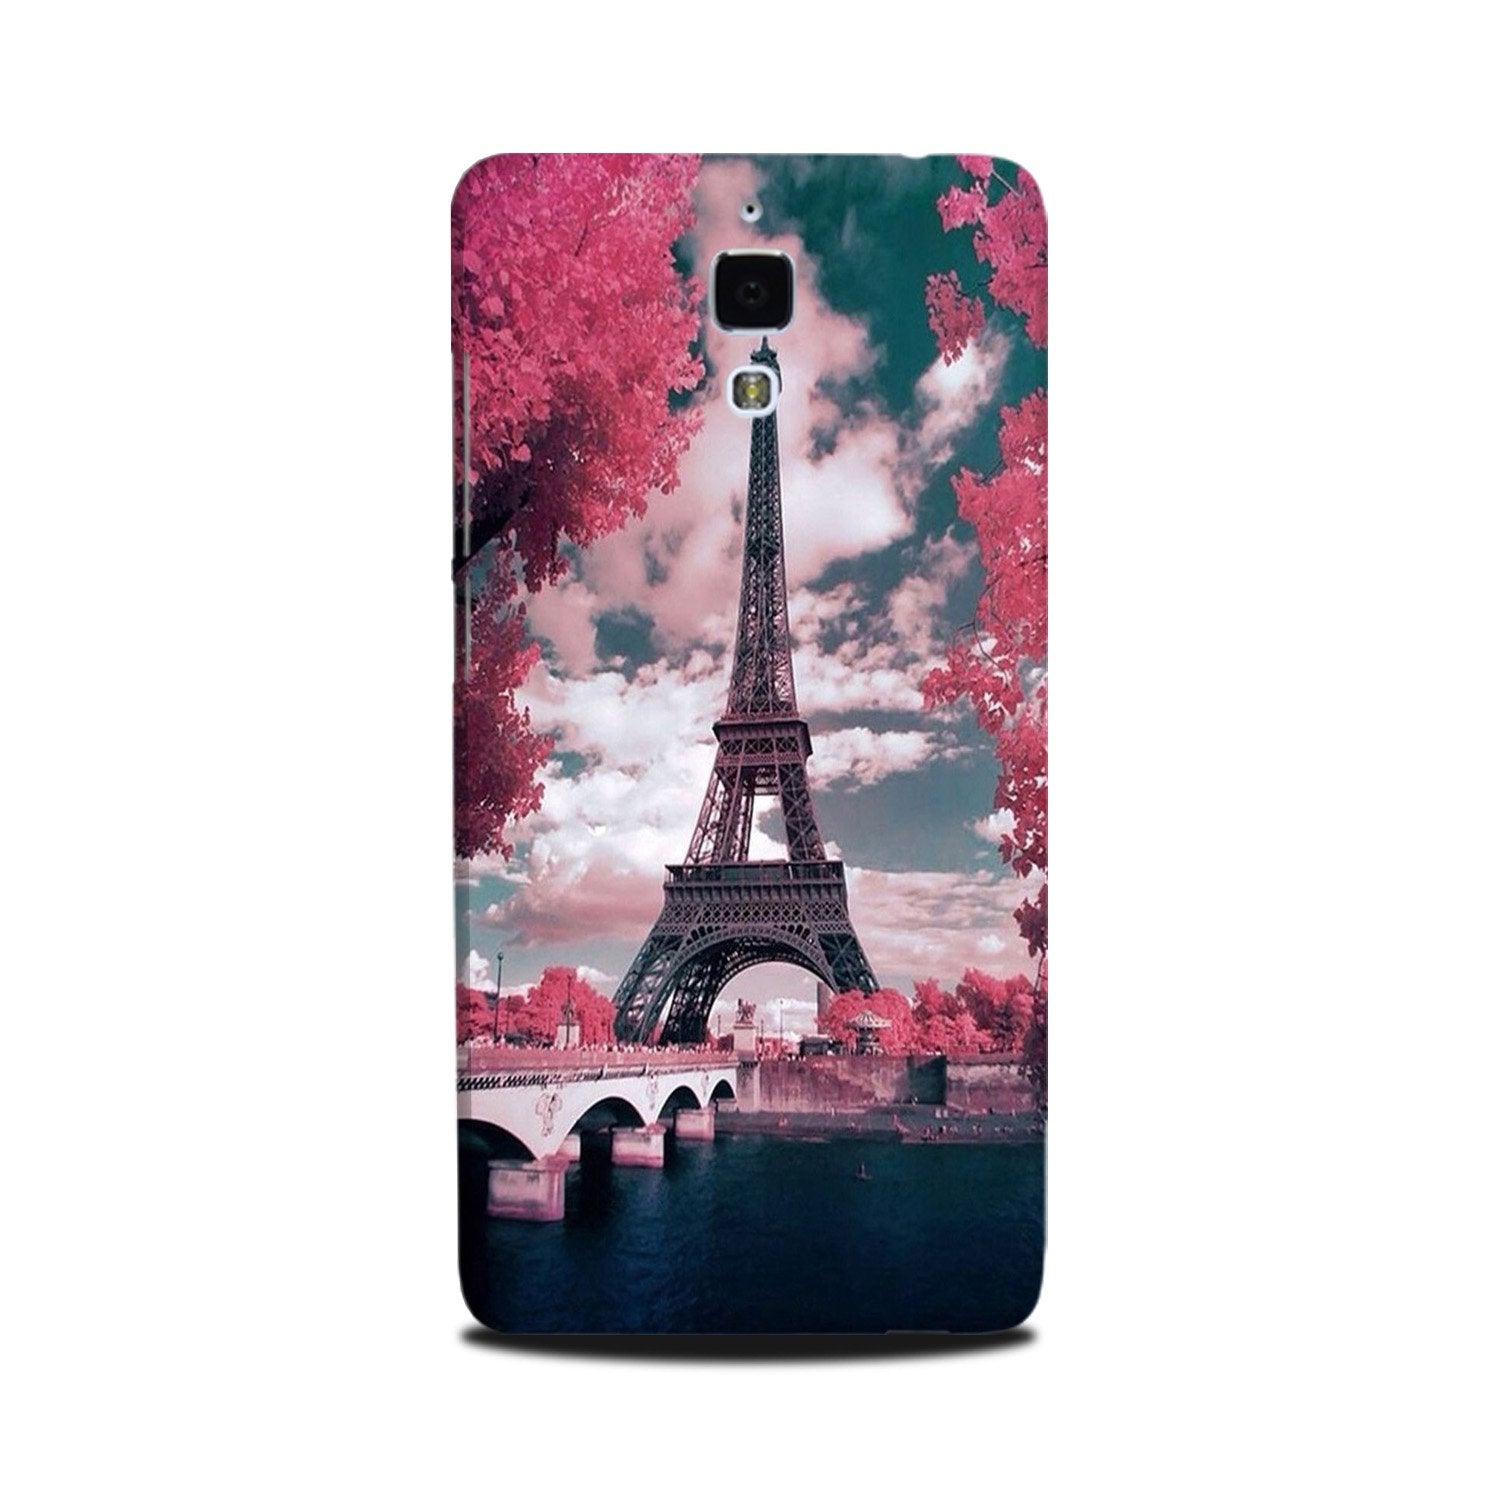 Eiffel Tower Case for Mi 4(Design - 101)